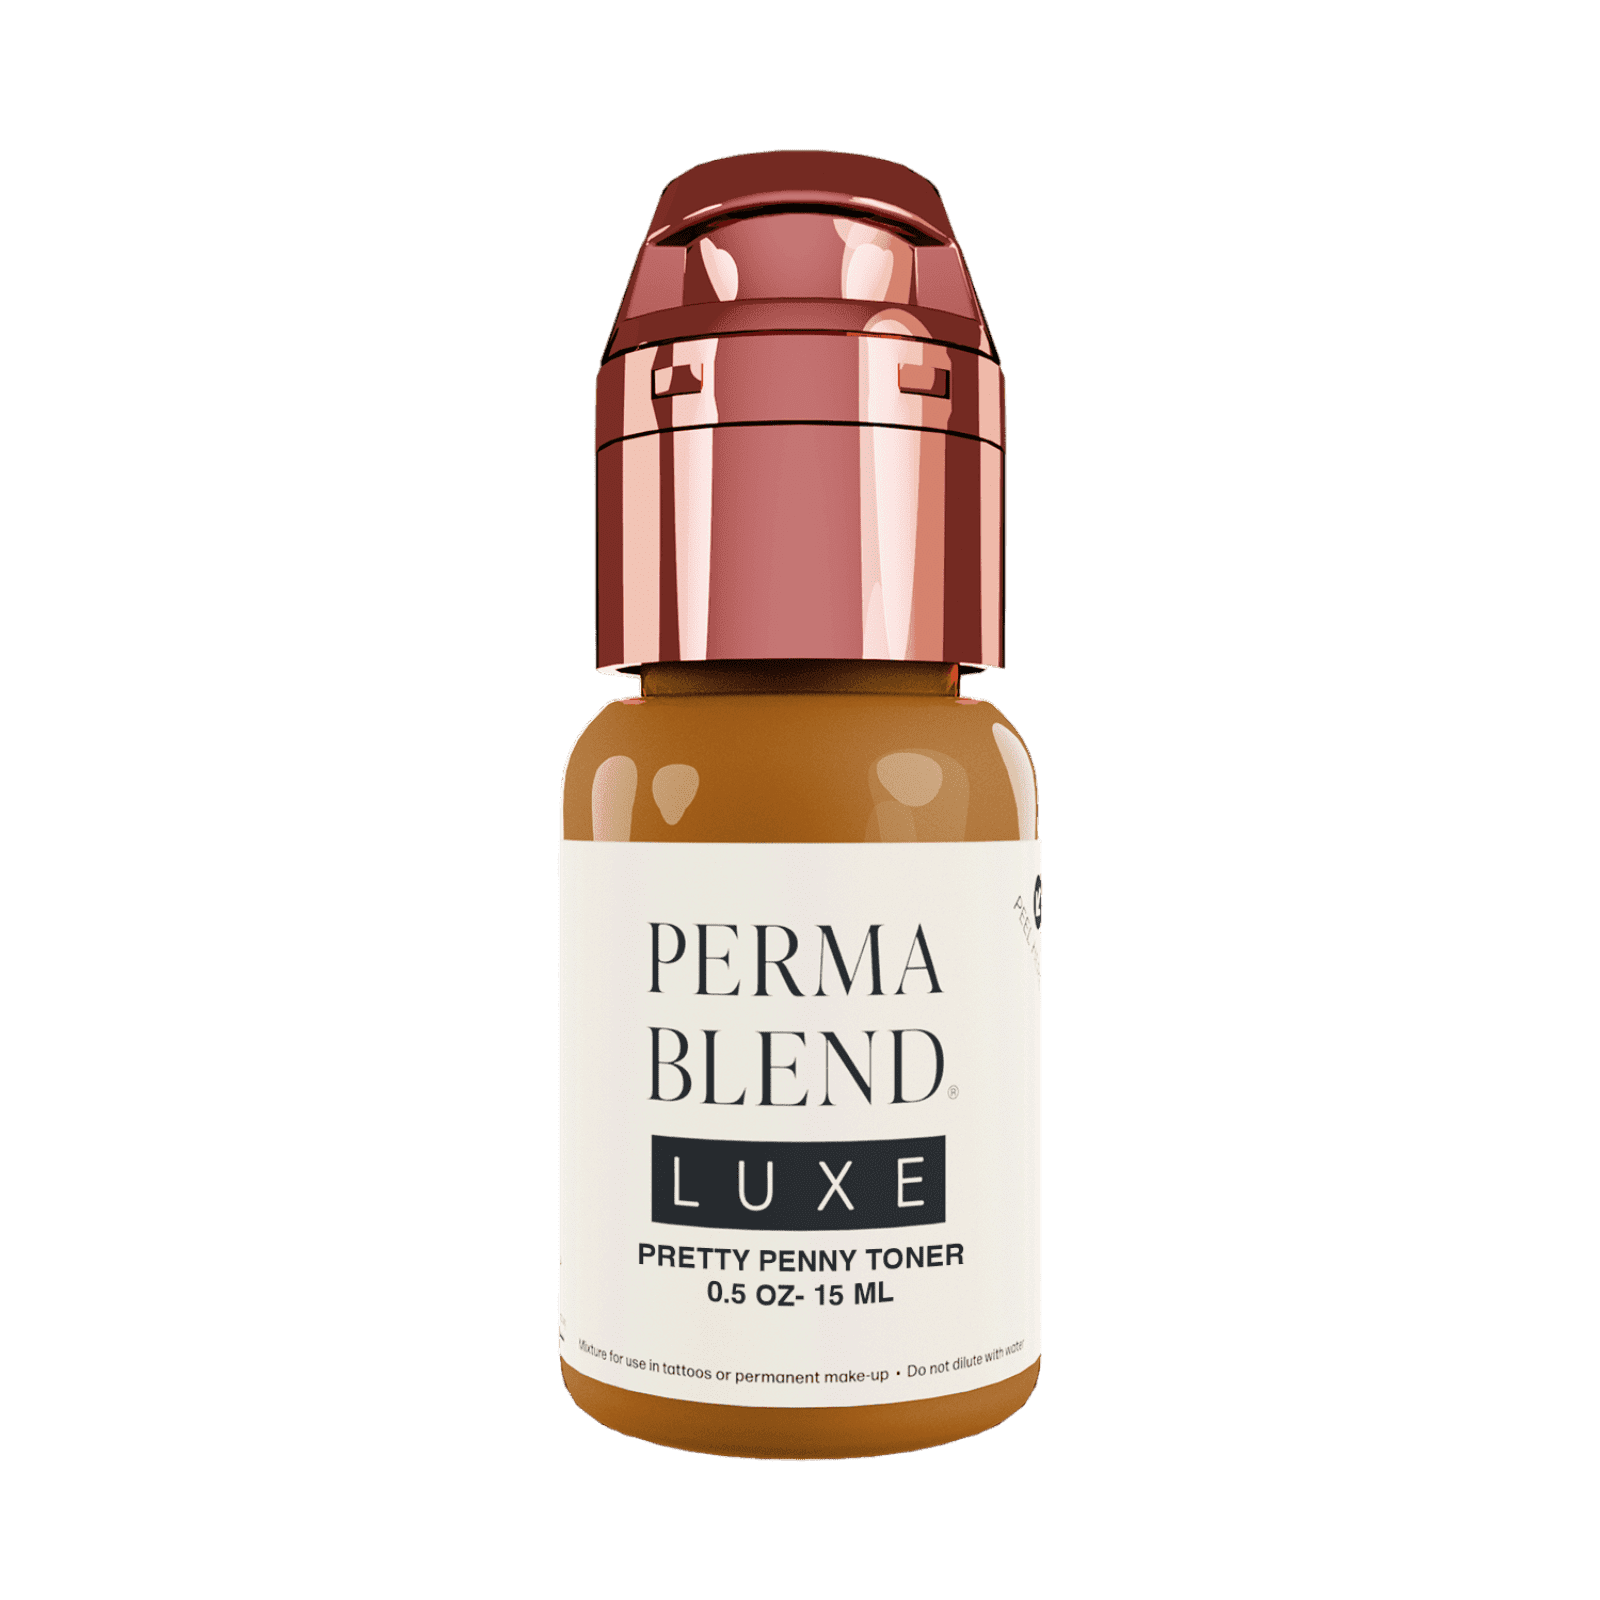 Perma Blend Luxe Pretty Penny Toner Pigmento PMU 15ml